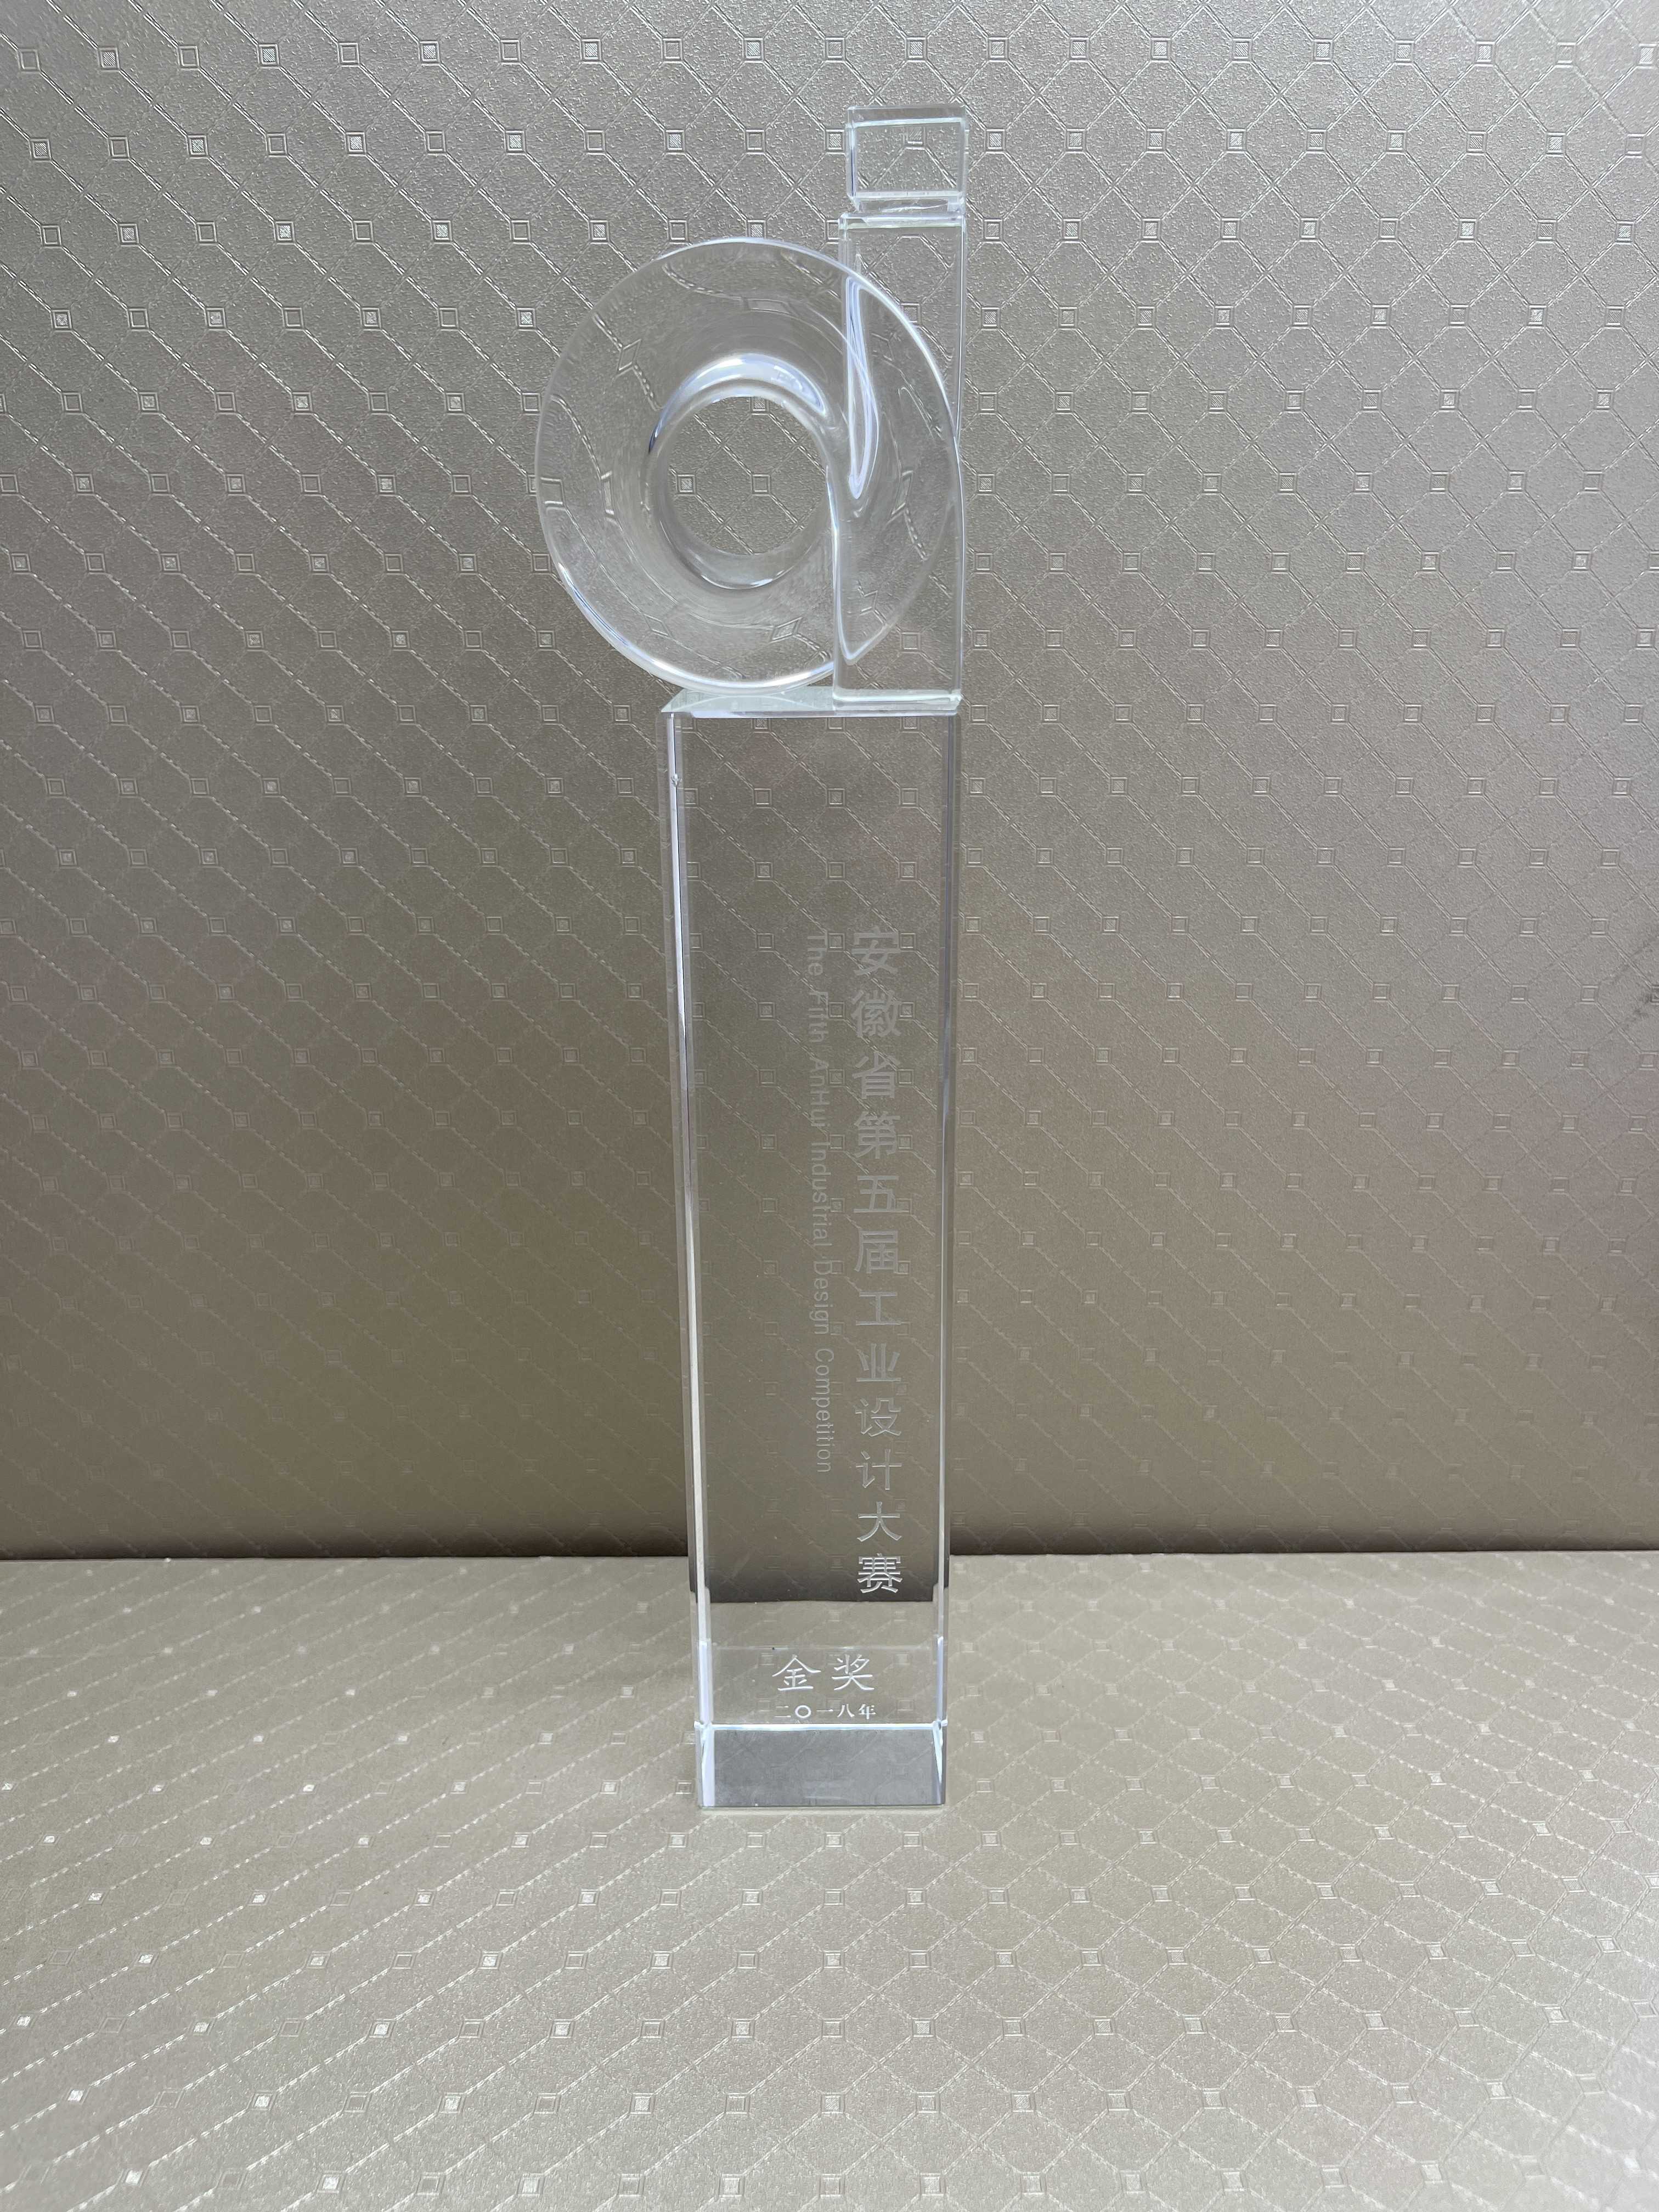 2018年11月聚乳酸纤维AB被获得安徽省第五届工业设计大赛产品类金奖